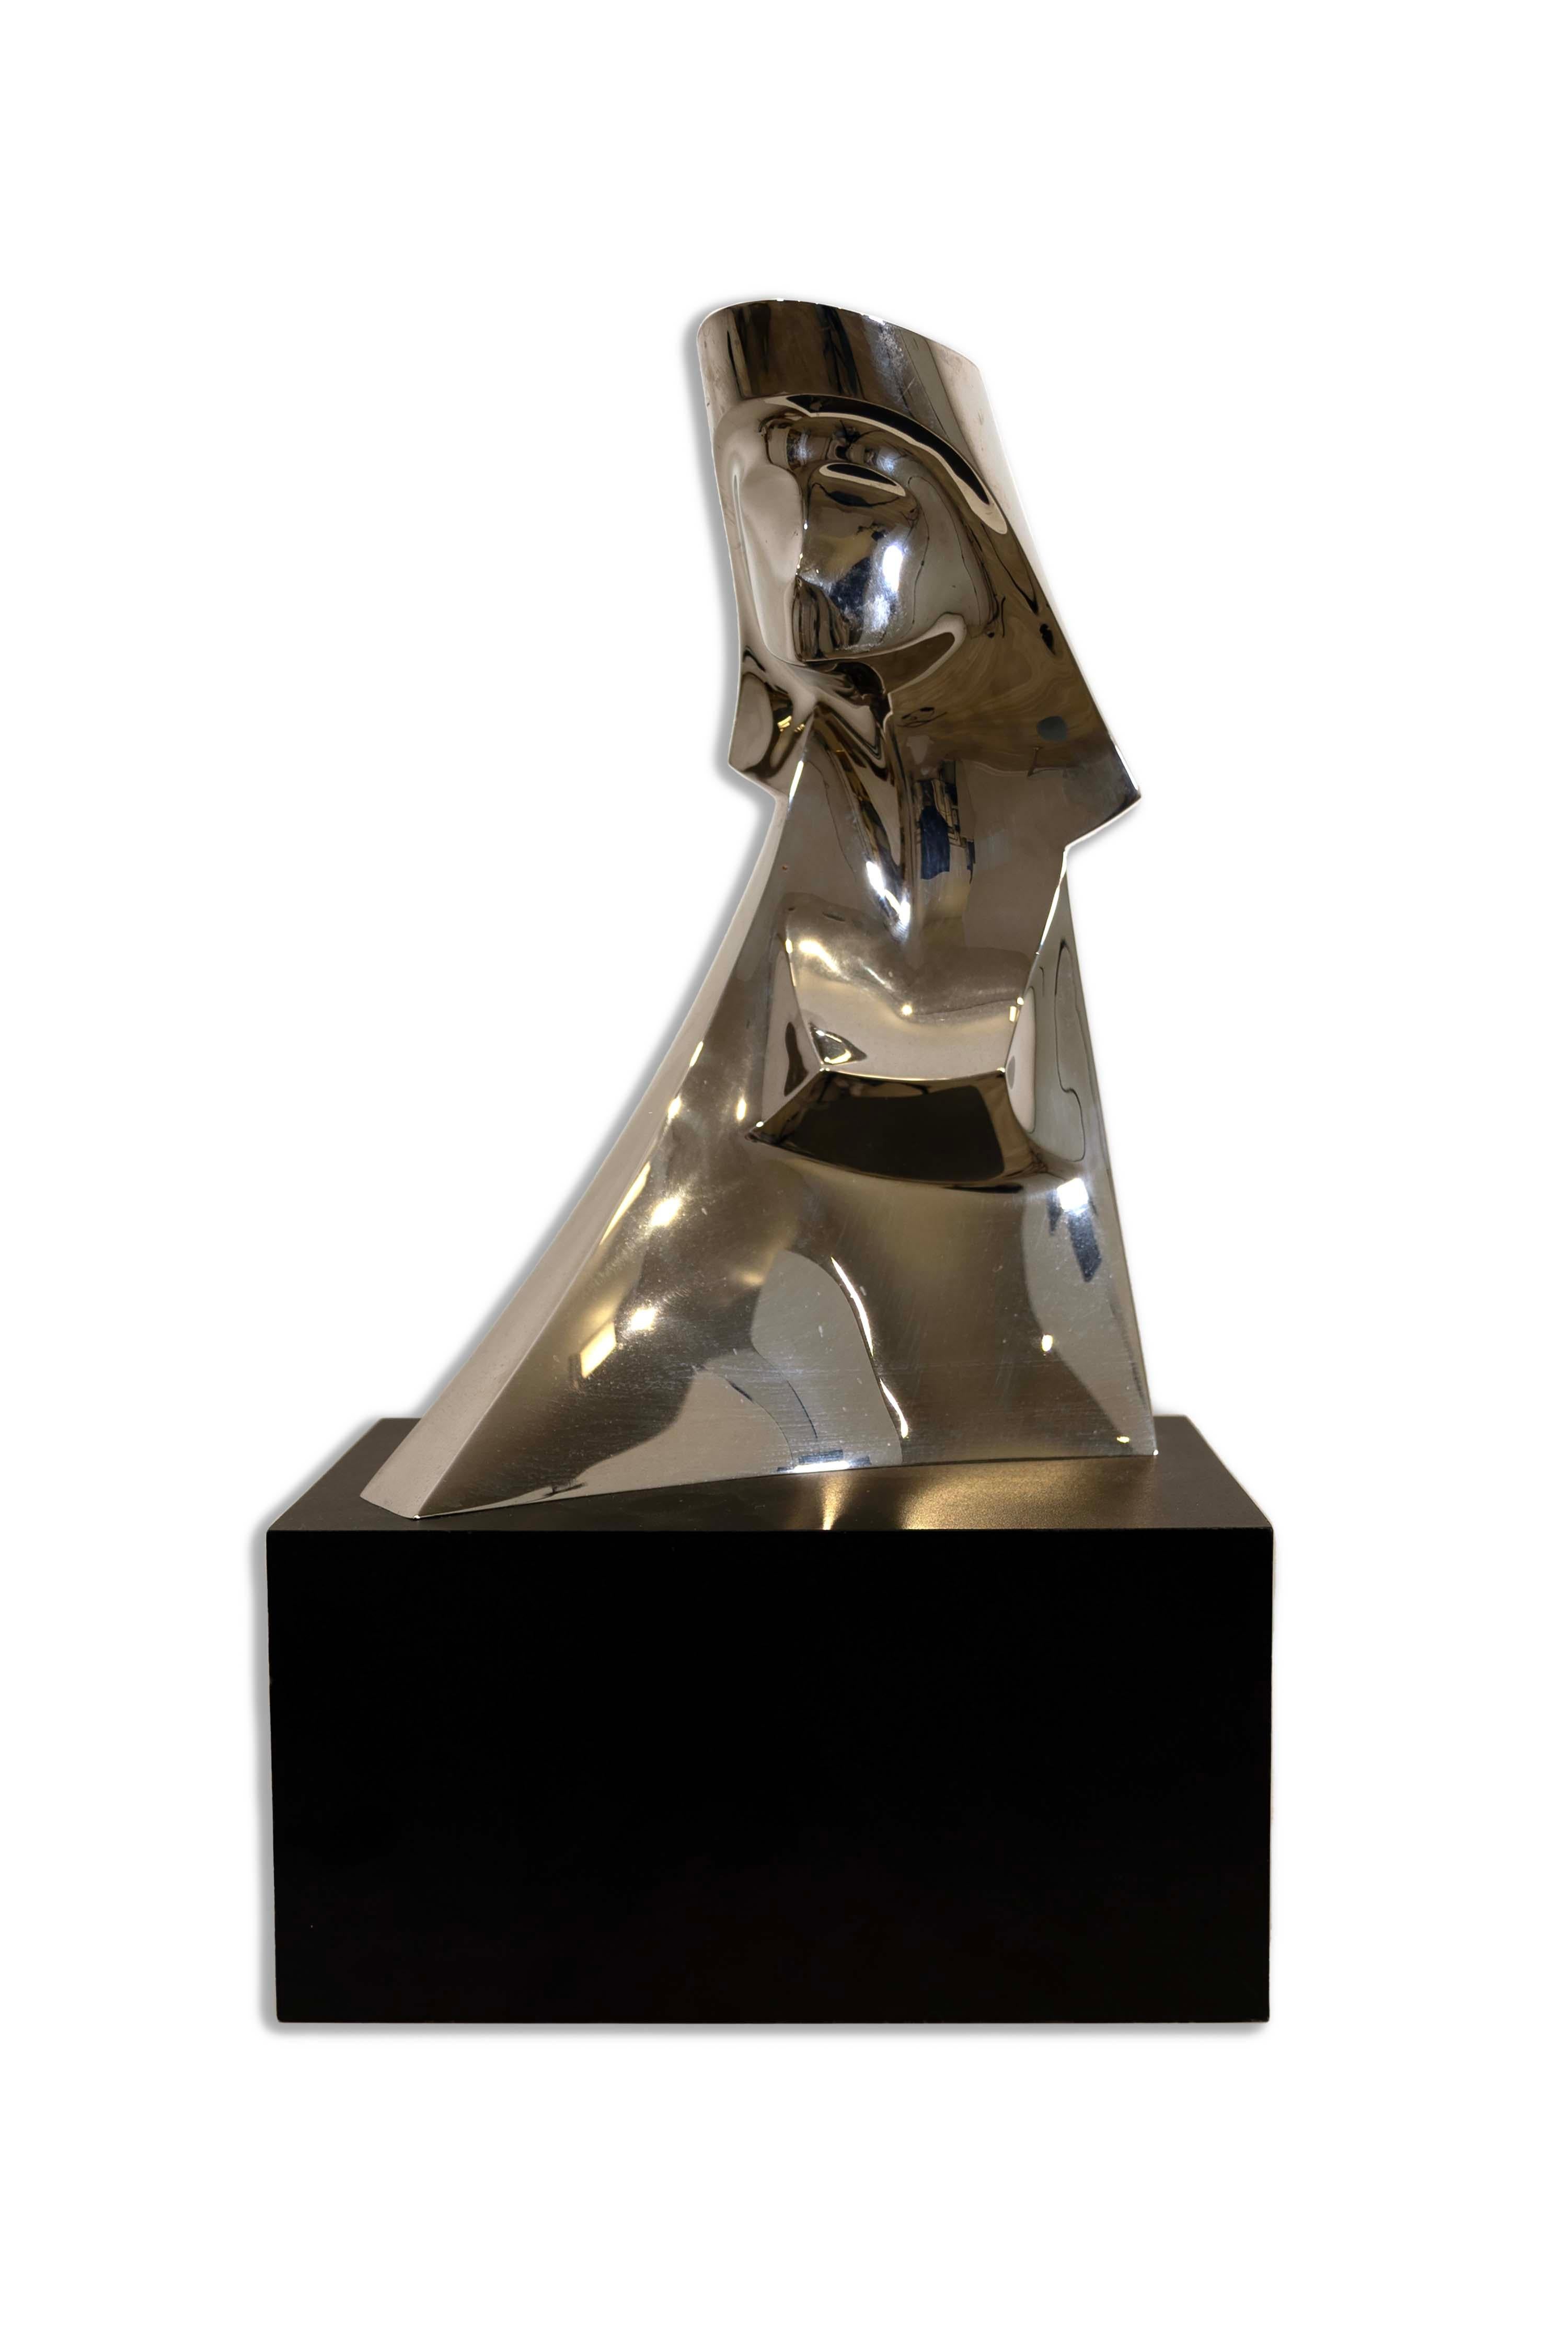 Entdecken Sie die Faszination des modernen Minimalismus mit der Aluminium-Sphinx-Skulptur von Gary Slater. Dieses Stück,  verfügt über eine glatte, reflektierende Oberfläche, die mit Licht und Schatten spielt und einen faszinierenden visuellen Tanz